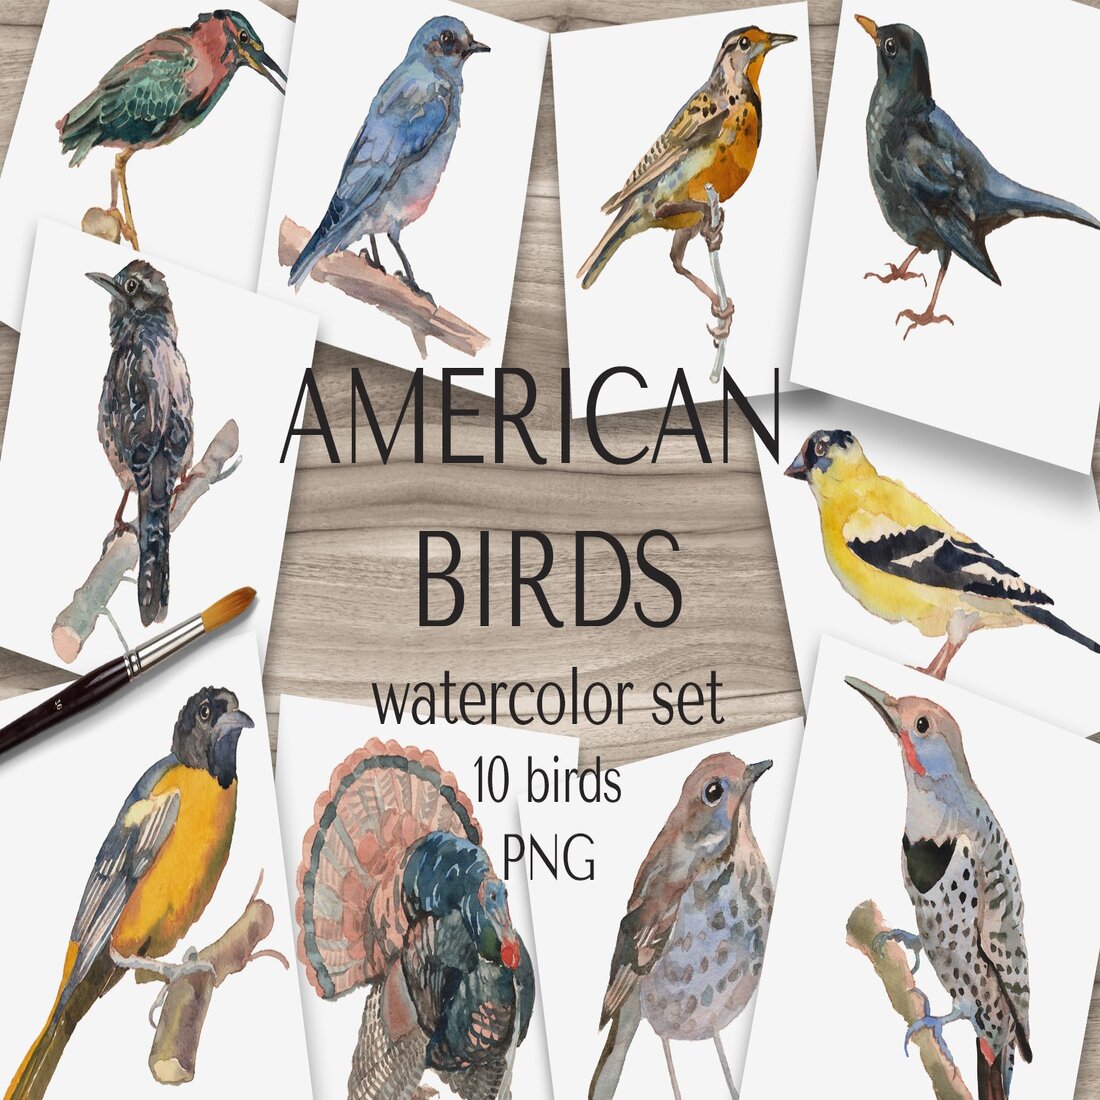 American Birds Watercolor Set.